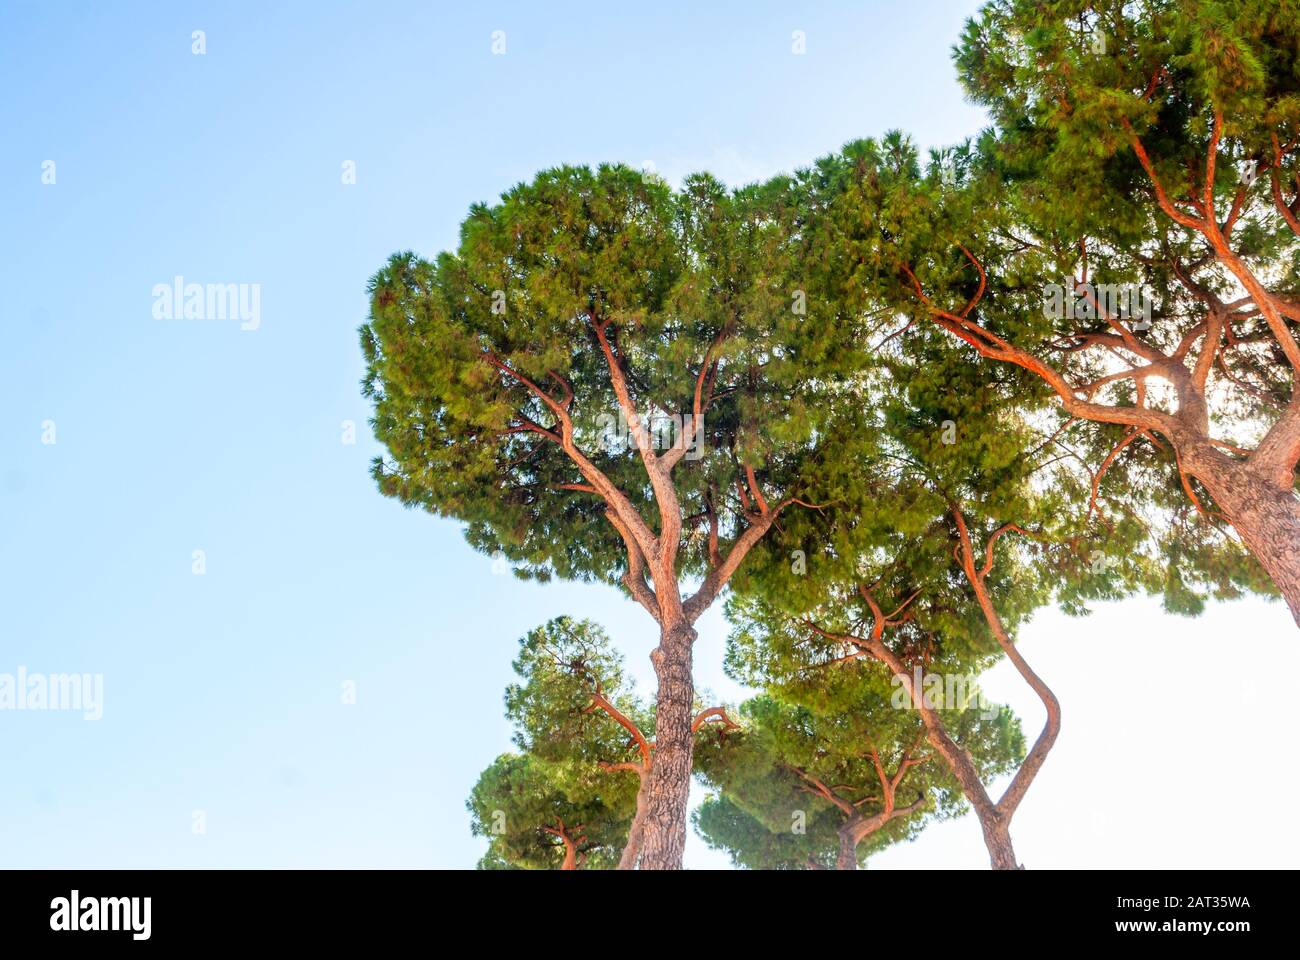 The stone pine, botanical name Pinus pinea, also known as the Italian stone pine, umbrella pine and parasol pine. Stock Photo